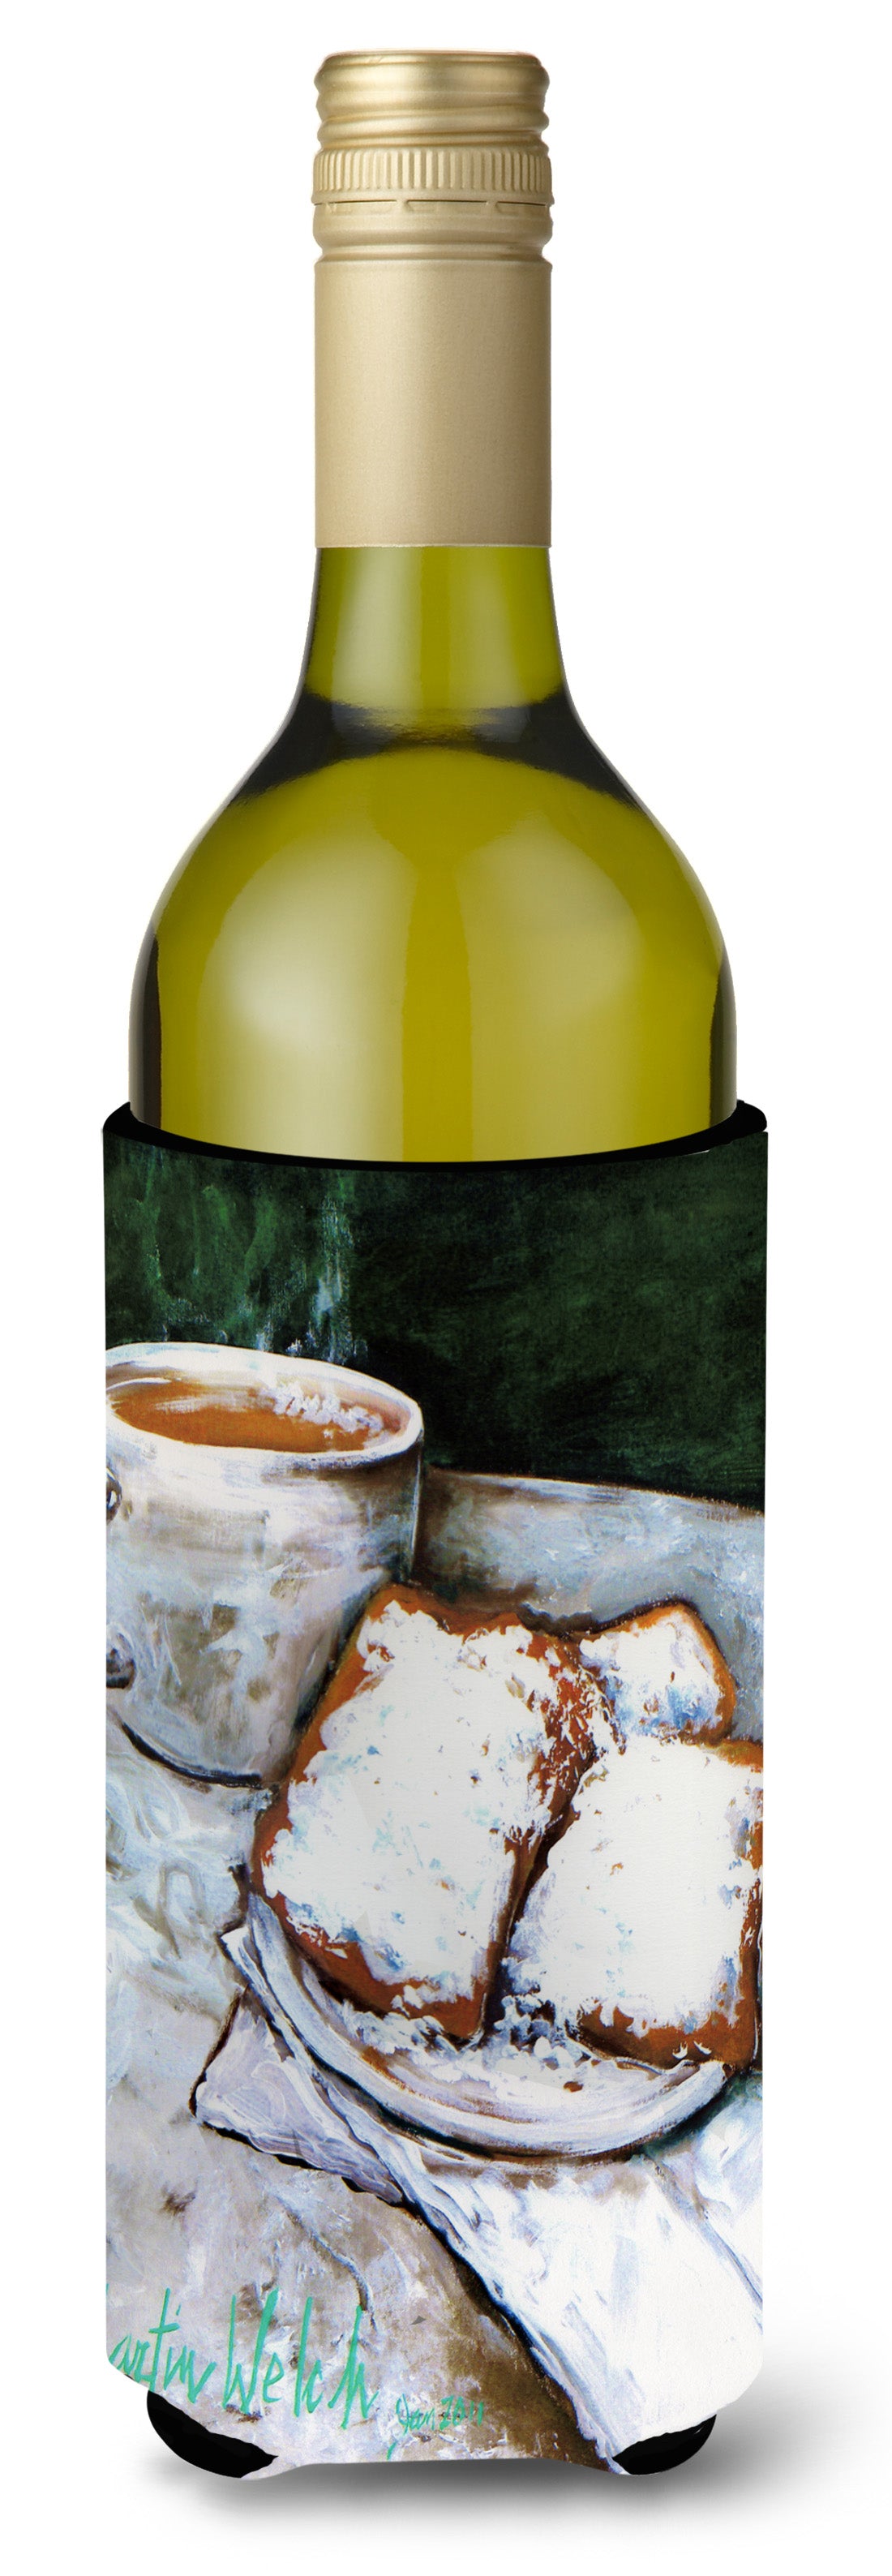 Buy this Beignets Breakfast Delight Wine Bottle Hugger